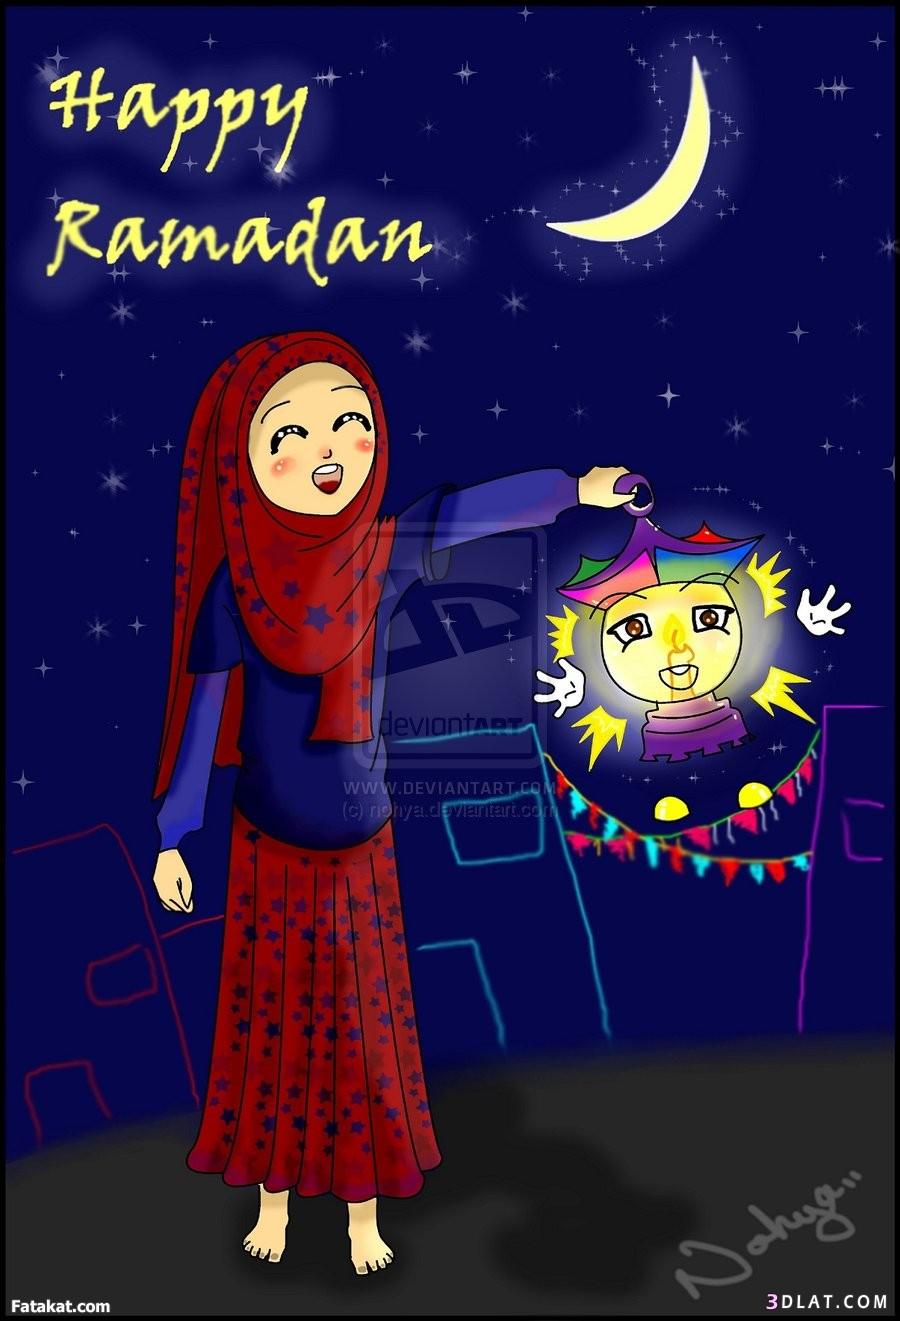 موسوعة صور شهر رمضان المبارك(2)